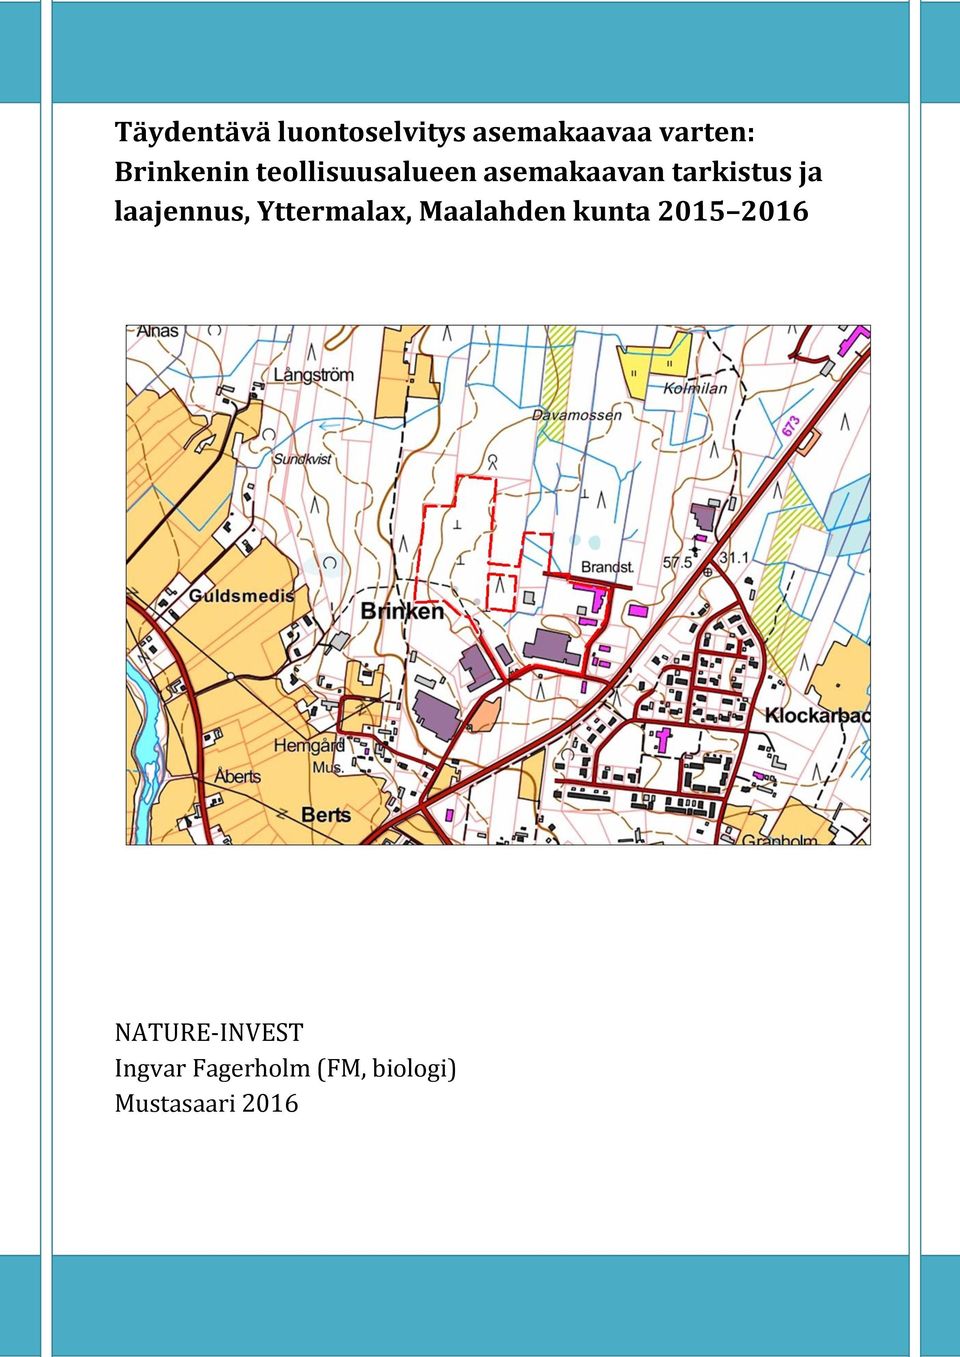 laajennus, Yttermalax, Maalahden kunta 2015 2016